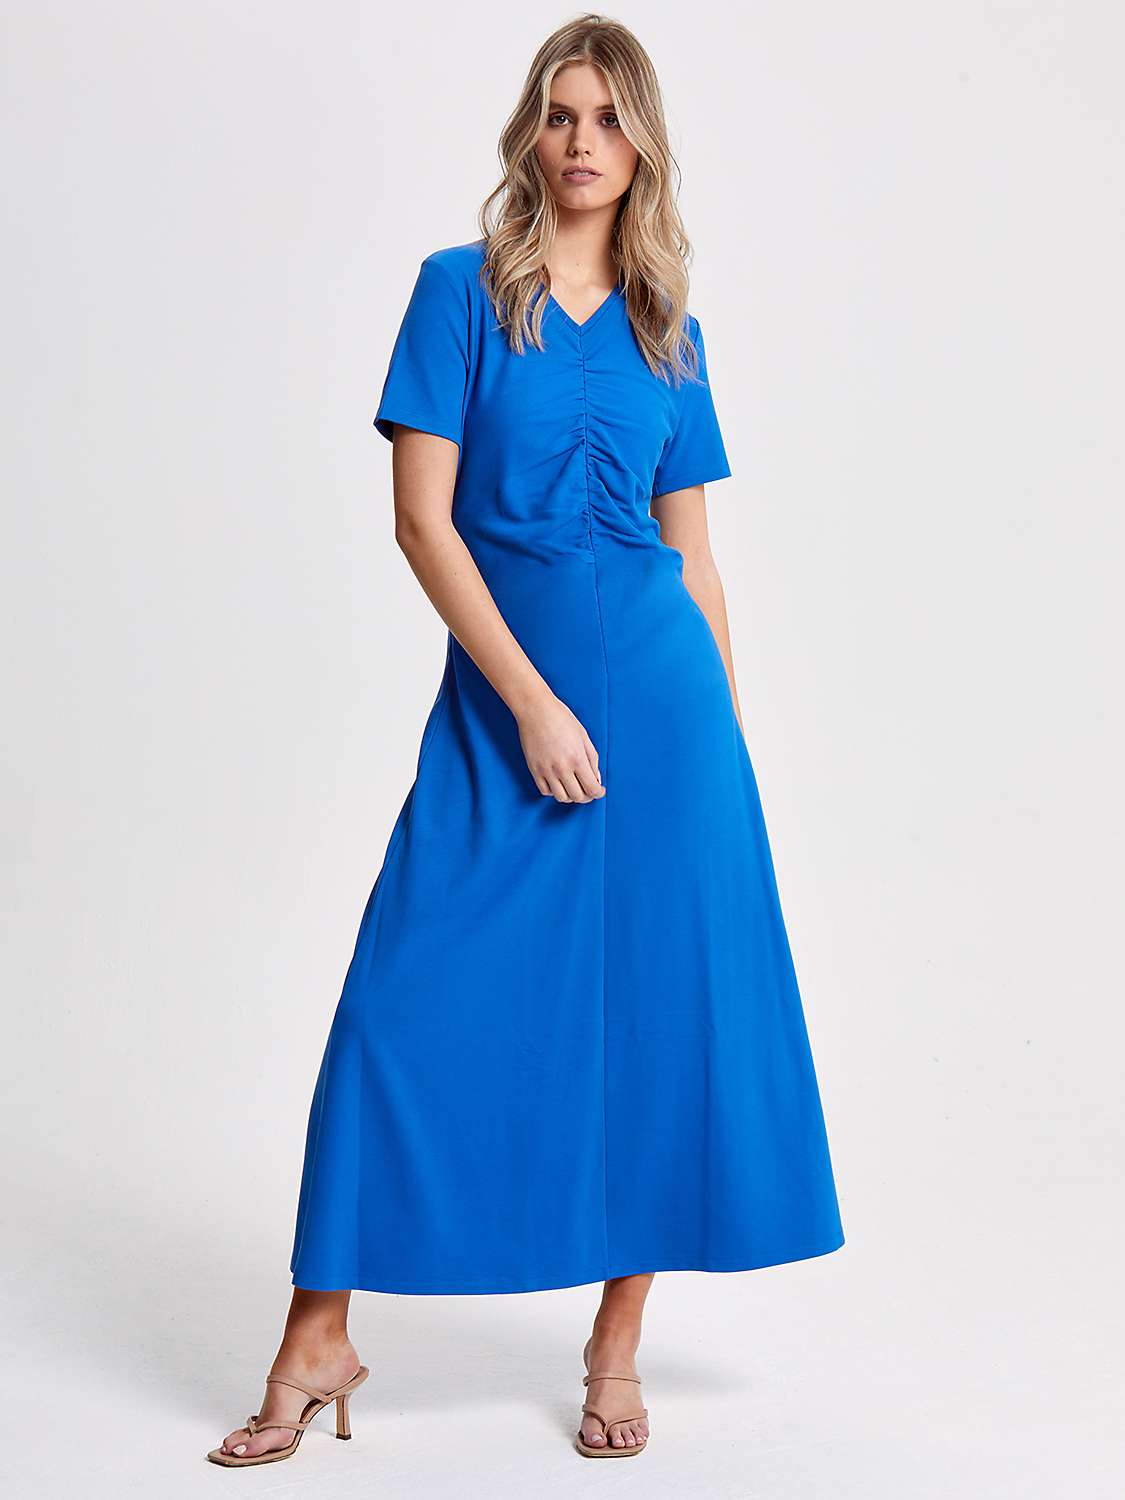 Buy Helen McAlinden Finnley Ruched Jersey Dress, Cobalt Blue Online at johnlewis.com